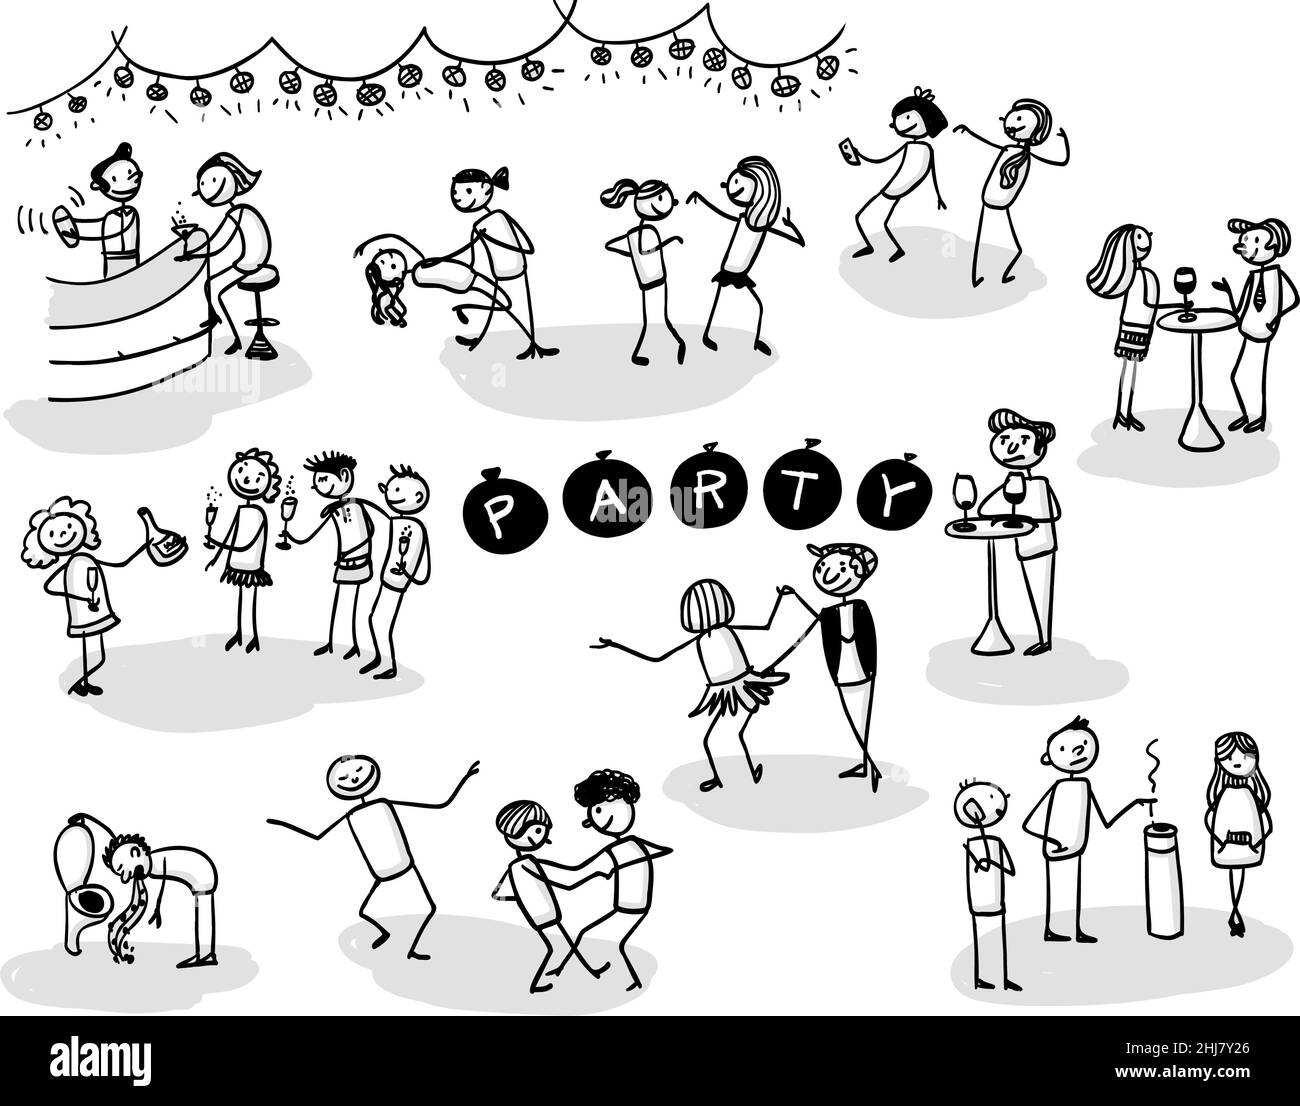 Handgezeichnete Stickmen-Illustration. Menschen, die Spaß zusammen haben, tanzen, trinken auf einer Party oder Feier. Isolierte Vektorgrafiken mit unterschiedlichen Stock Vektor